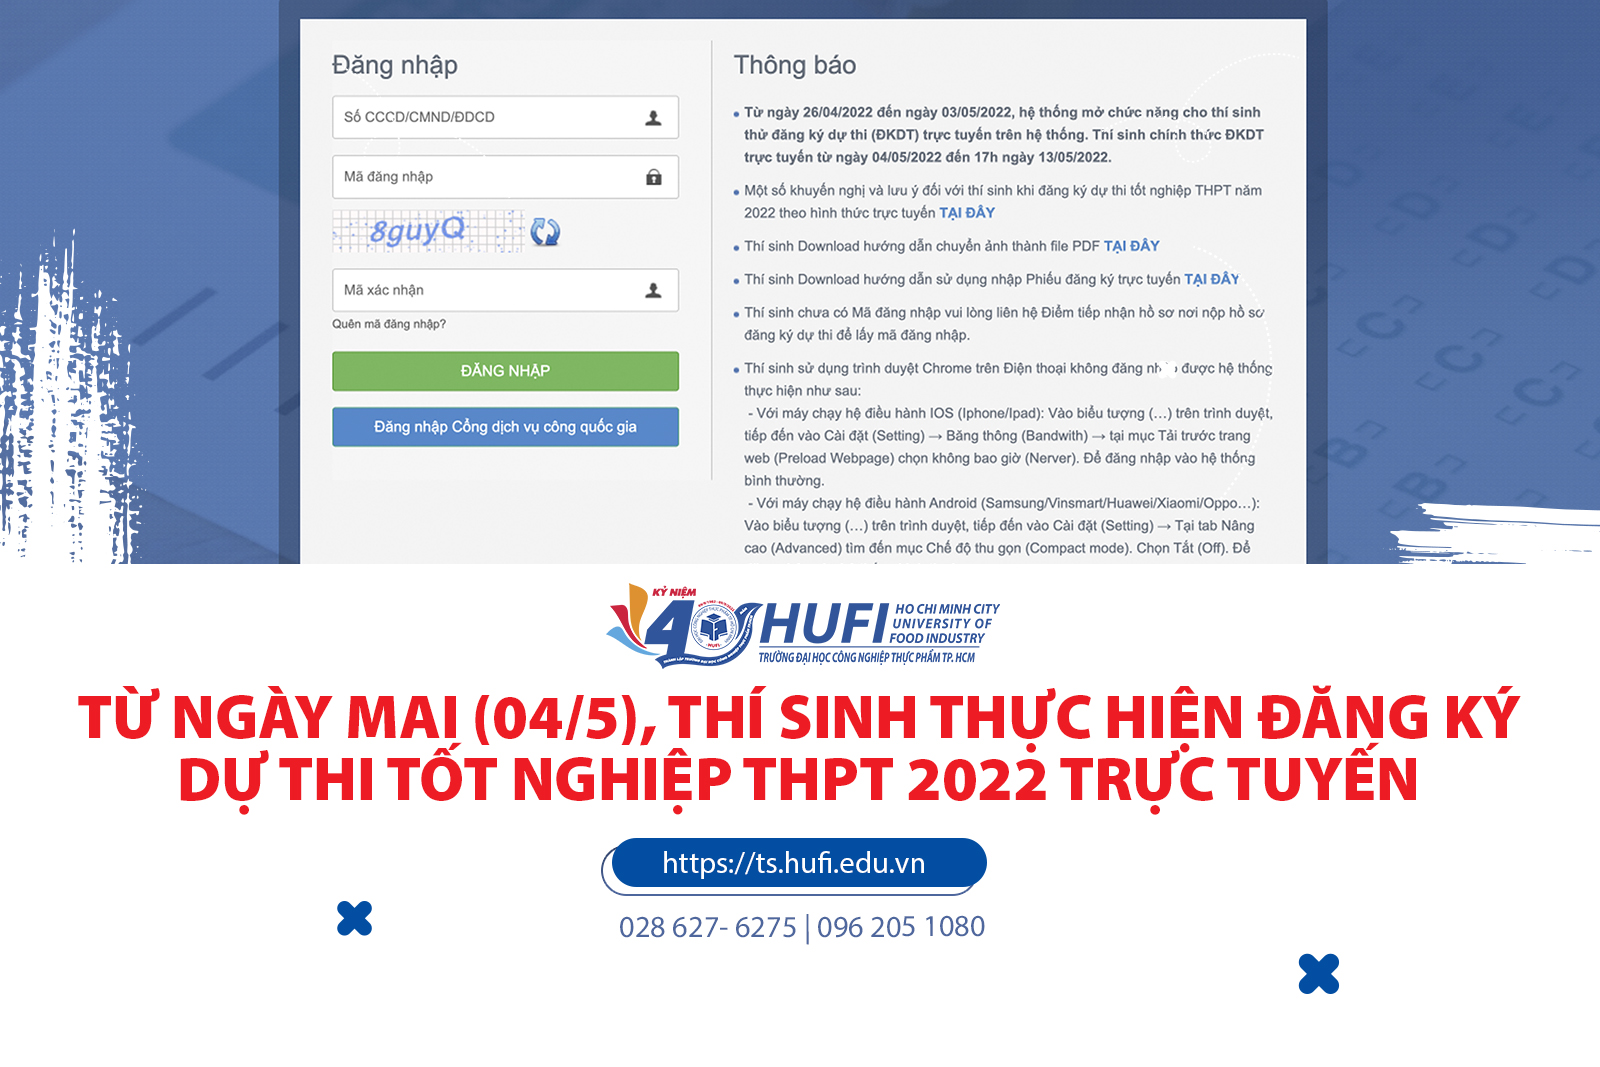 Từ ngày mai (04/5), thí sinh bắt đầu đăng ký dự thi tốt nghiệp THPT năm 2022 trực tuyến